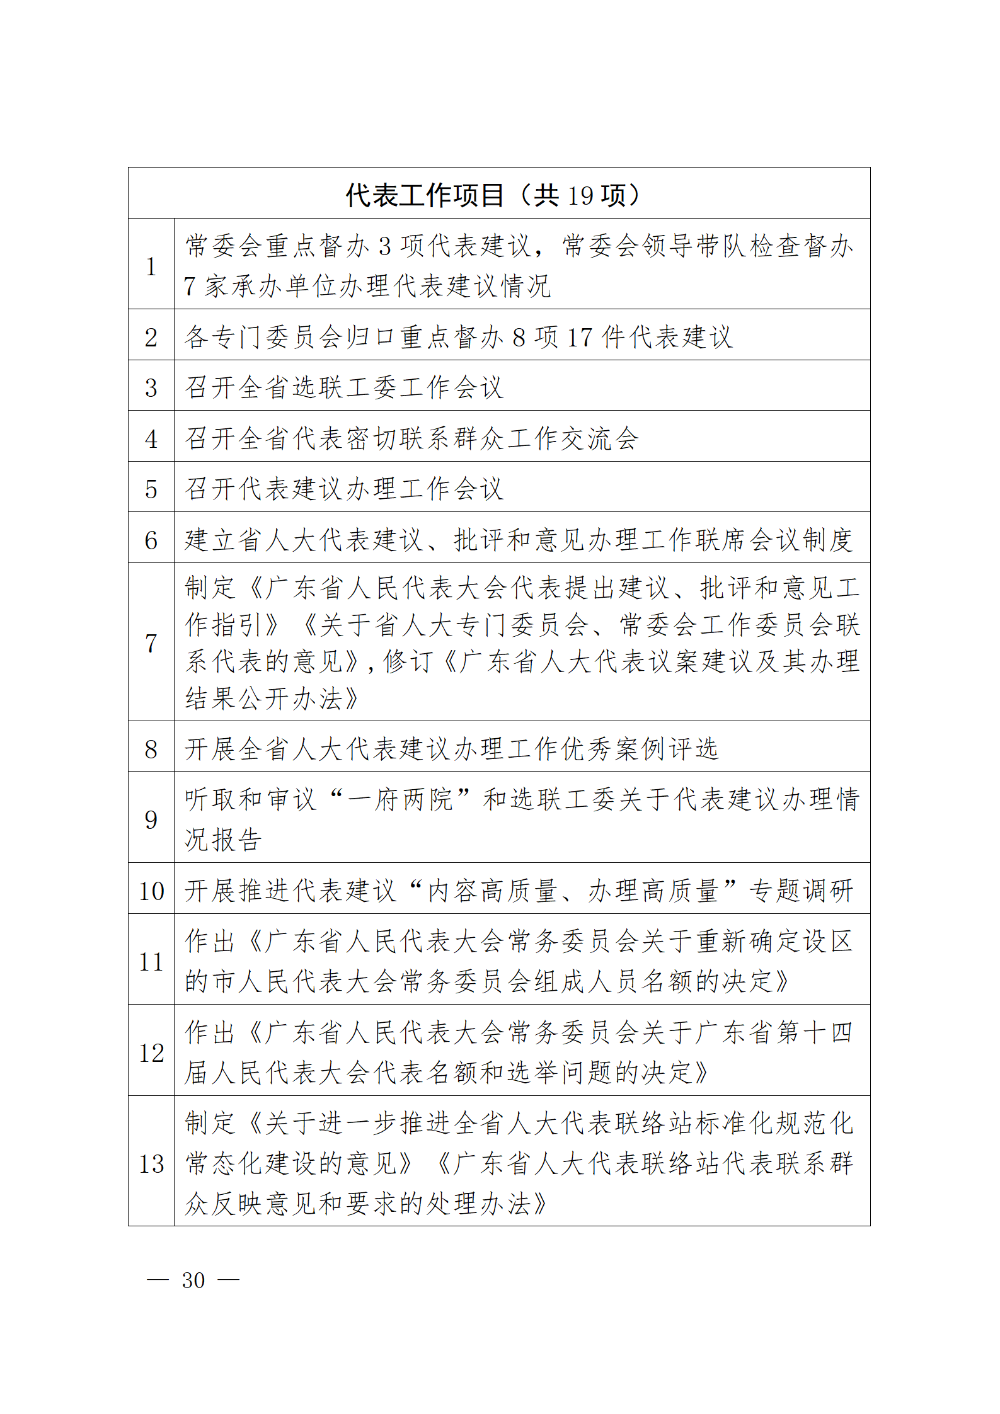 230115-（登报版定稿）广东省人民代表大会常务委员会工作报告_30.png